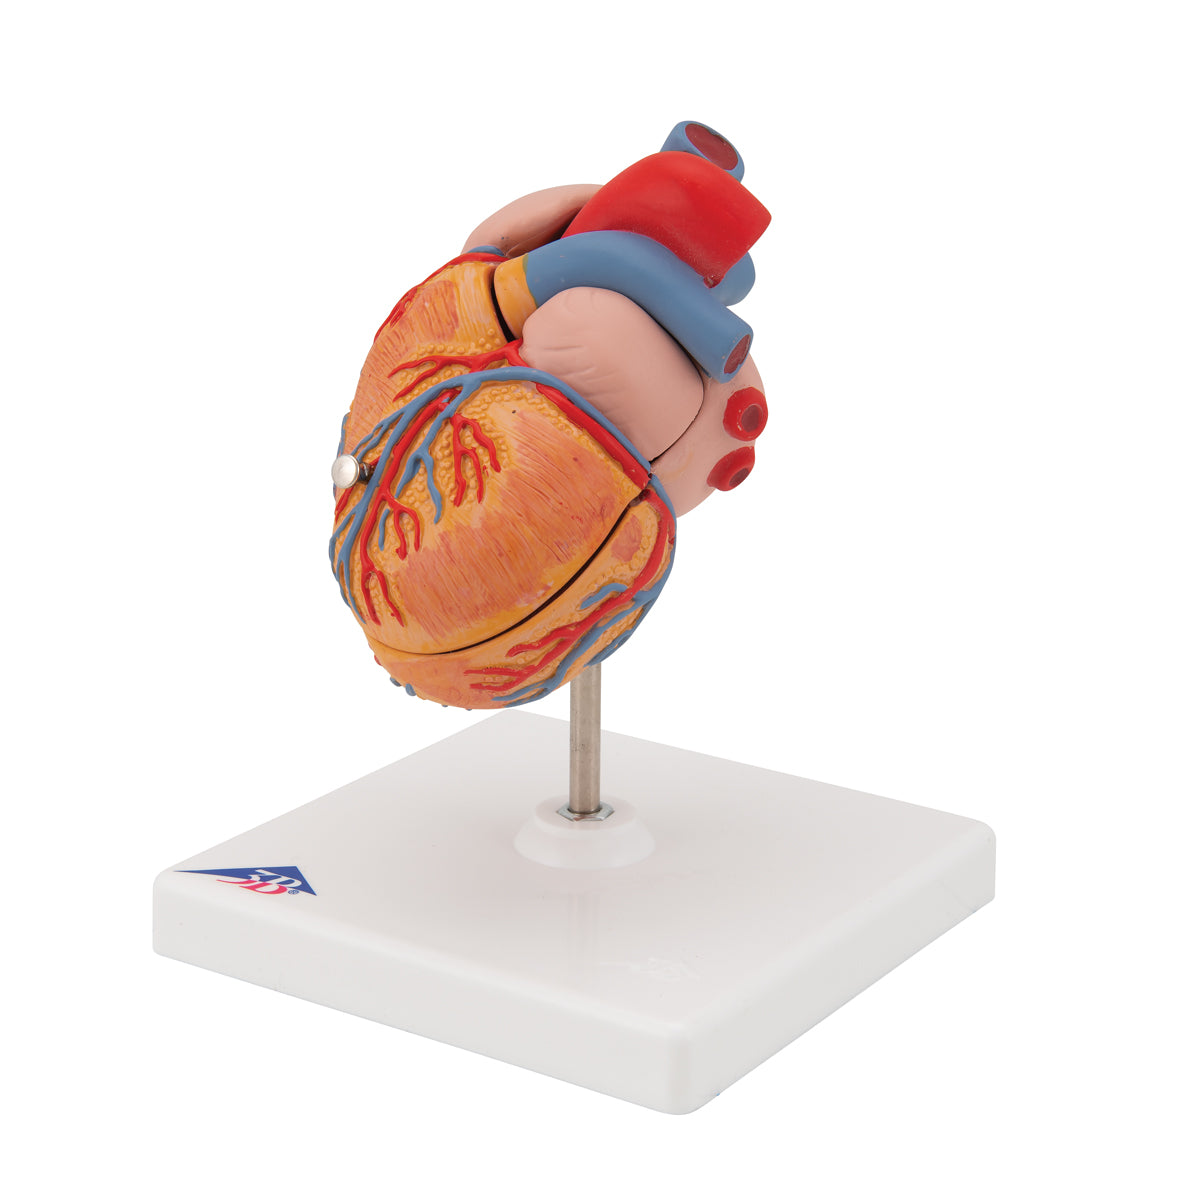 Minskad hjärtmodell med vänsterkammarhypertrofi och stam